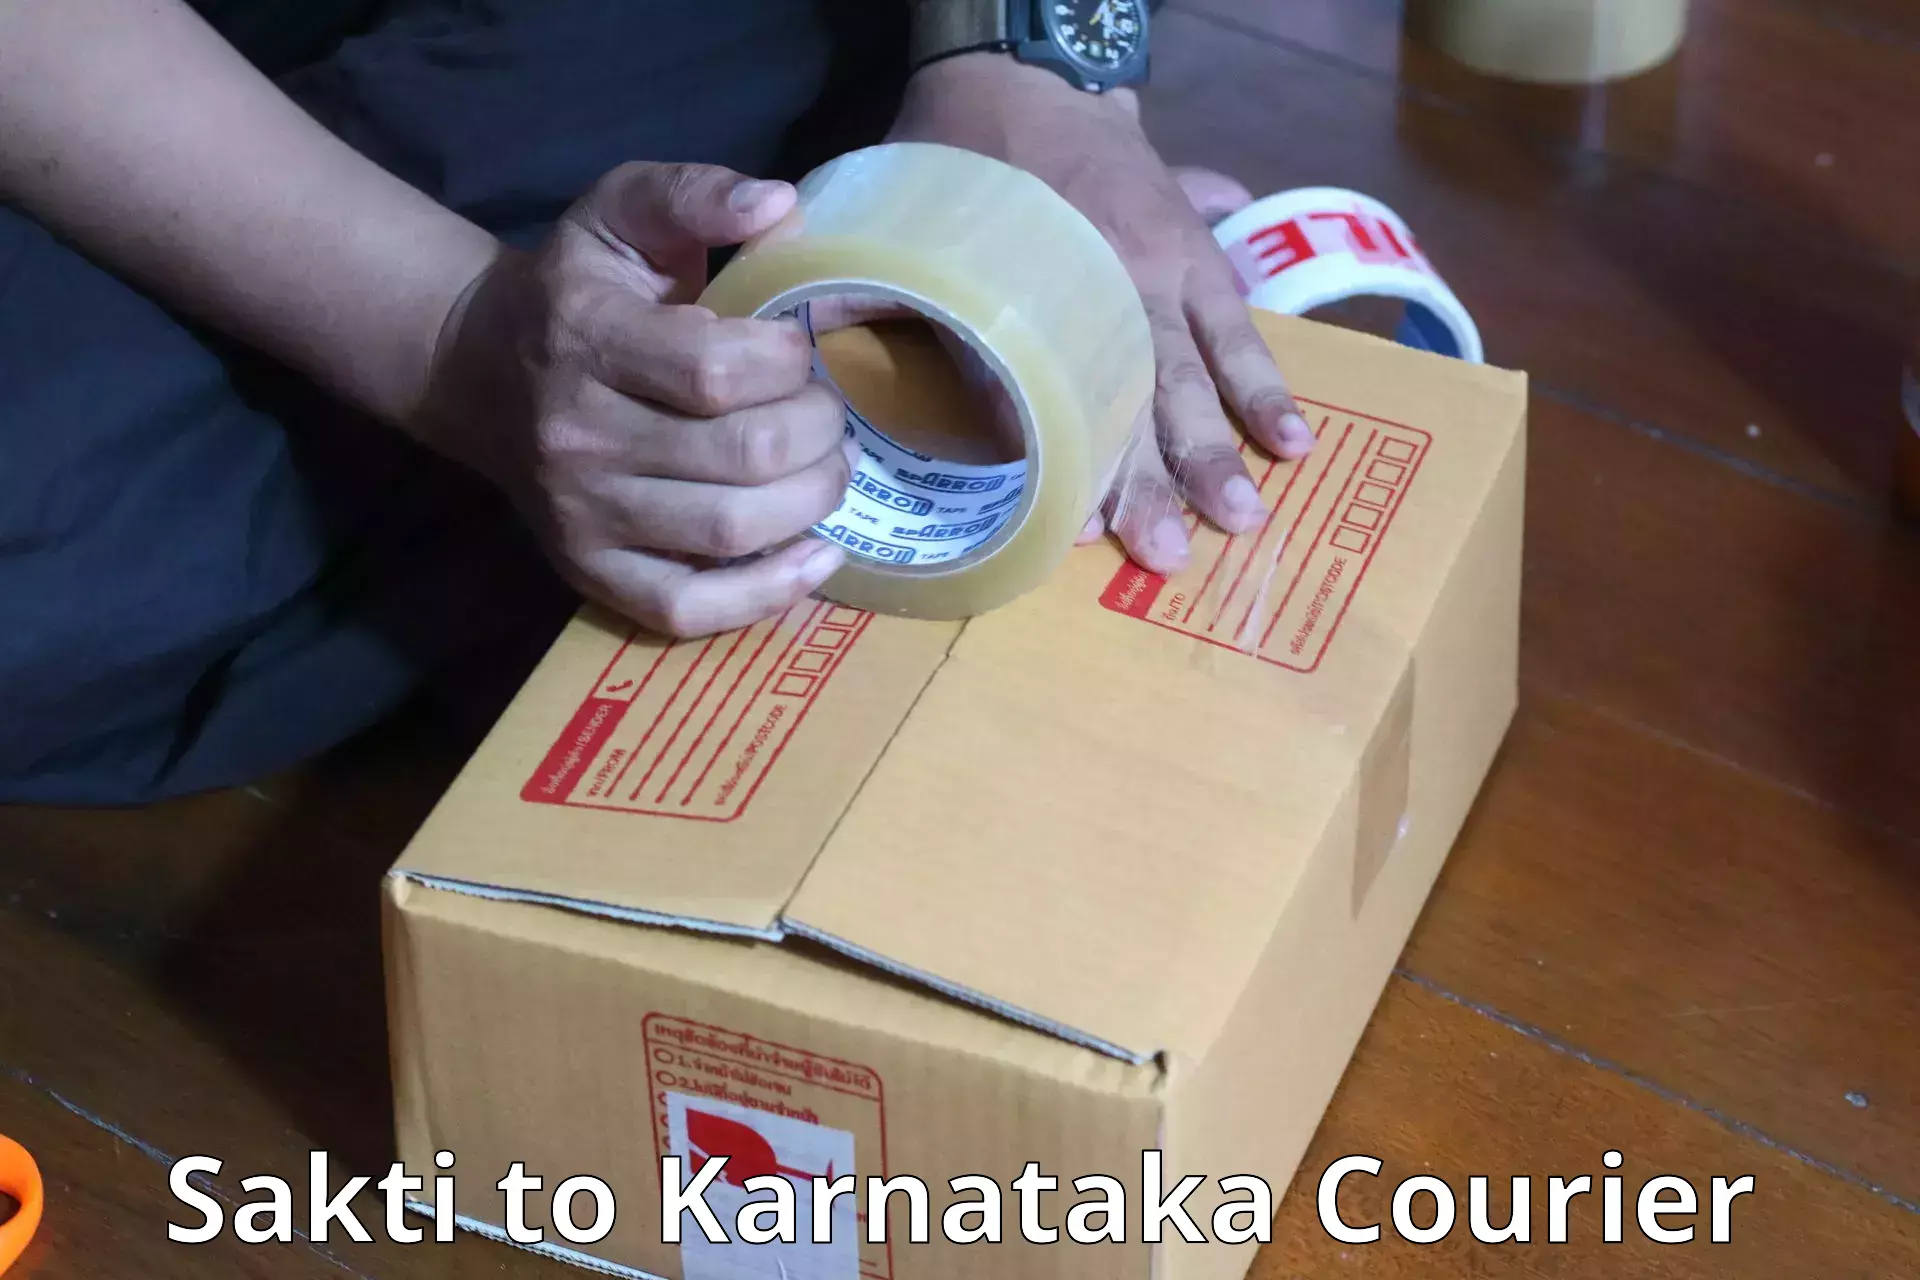 Baggage shipping experts Sakti to Gurmatkal